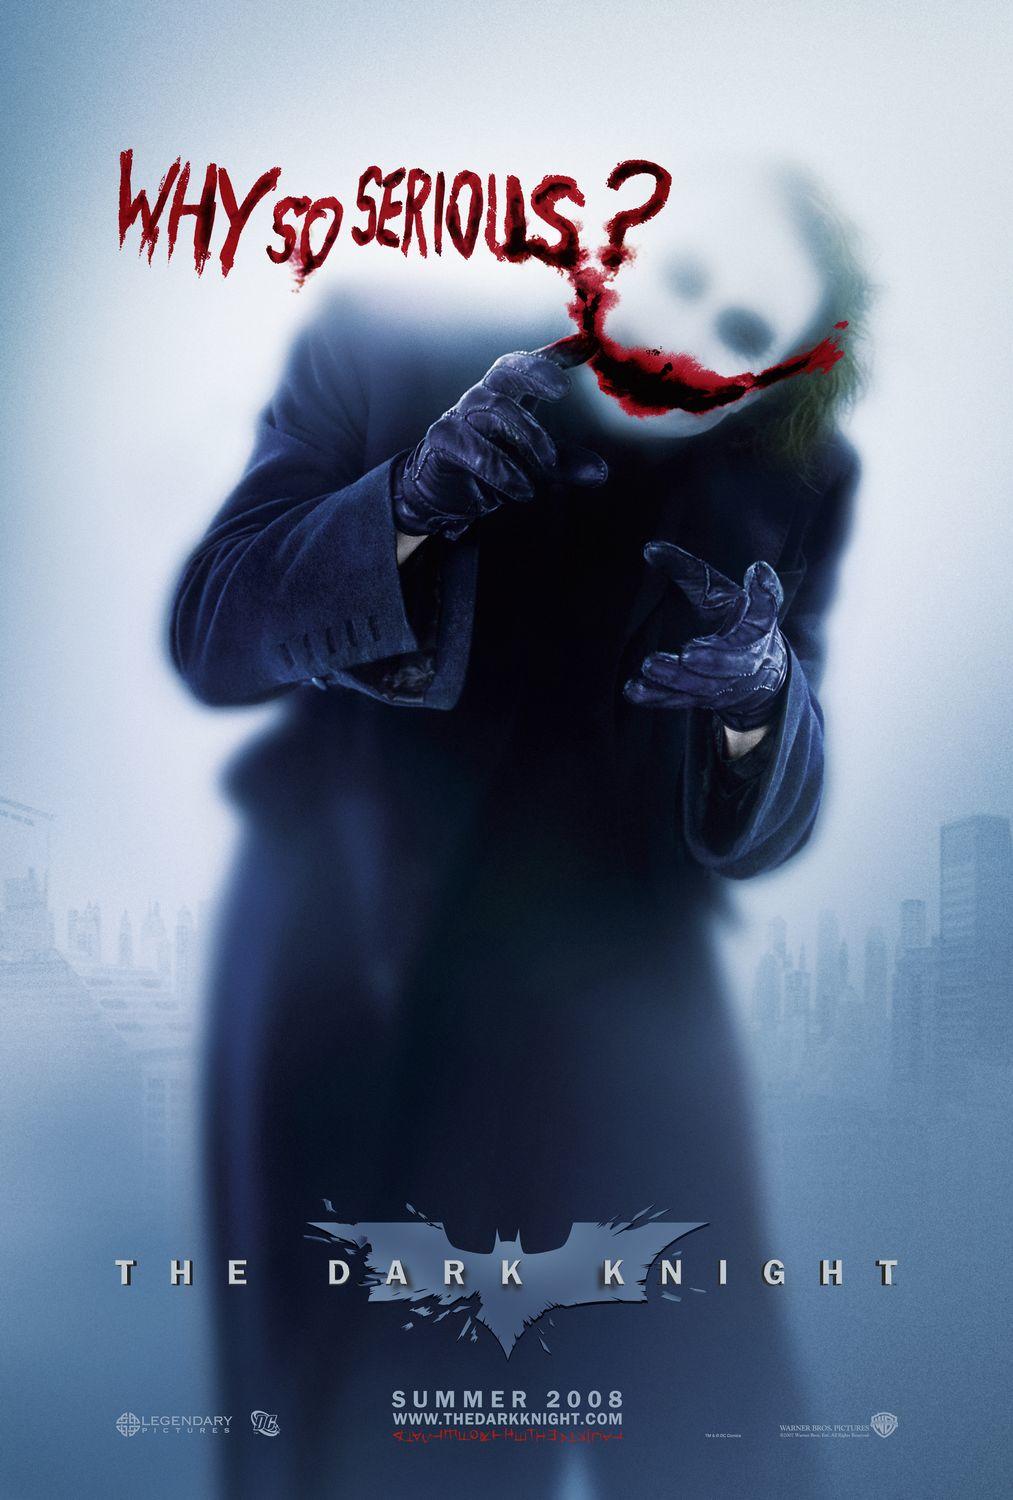  海报：蝙蝠侠：黑暗骑士，导演：克里斯托弗·诺兰。<br />当你凝视深渊的时候，深渊也在凝视你。 